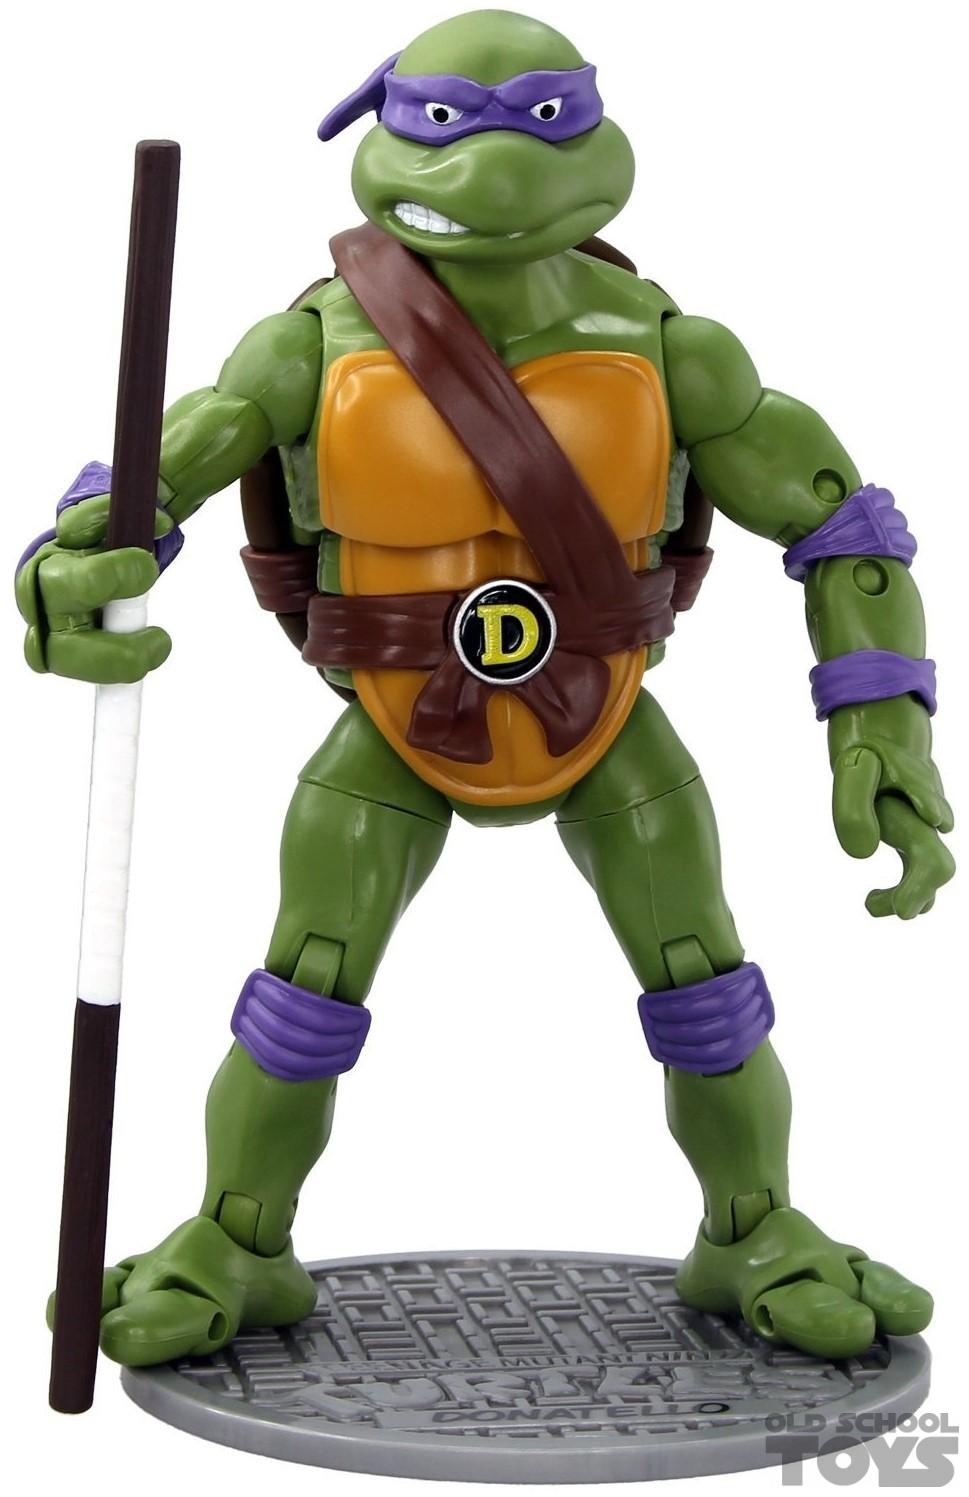 Overvloedig Leia ik klaag Teenage Mutant Ninja Turtles Donatello (classic collection) Playmates  compleet | Old School Toys